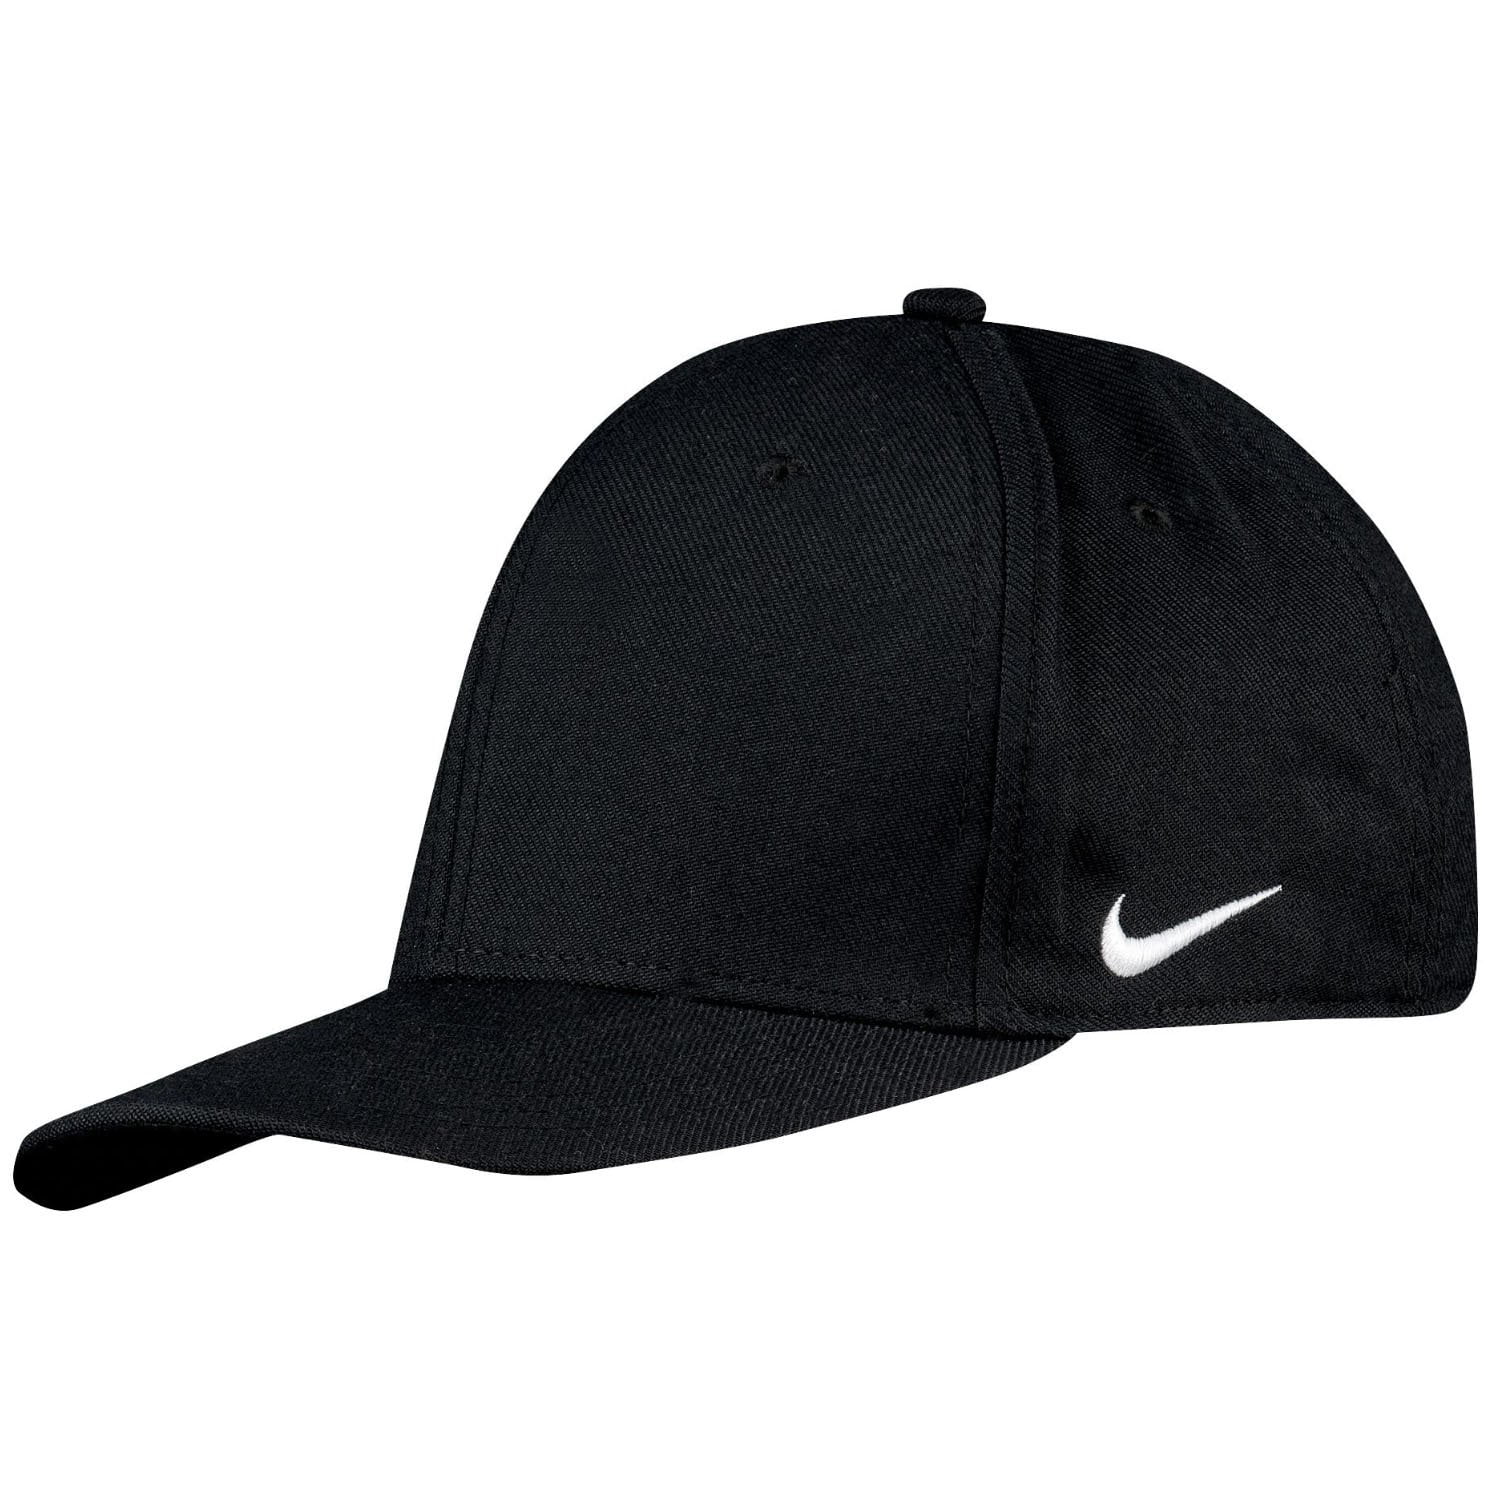 Nike Team Dri-Fit Swoosh Flex Cap 867308-010 (L/XL) - Walmart.com